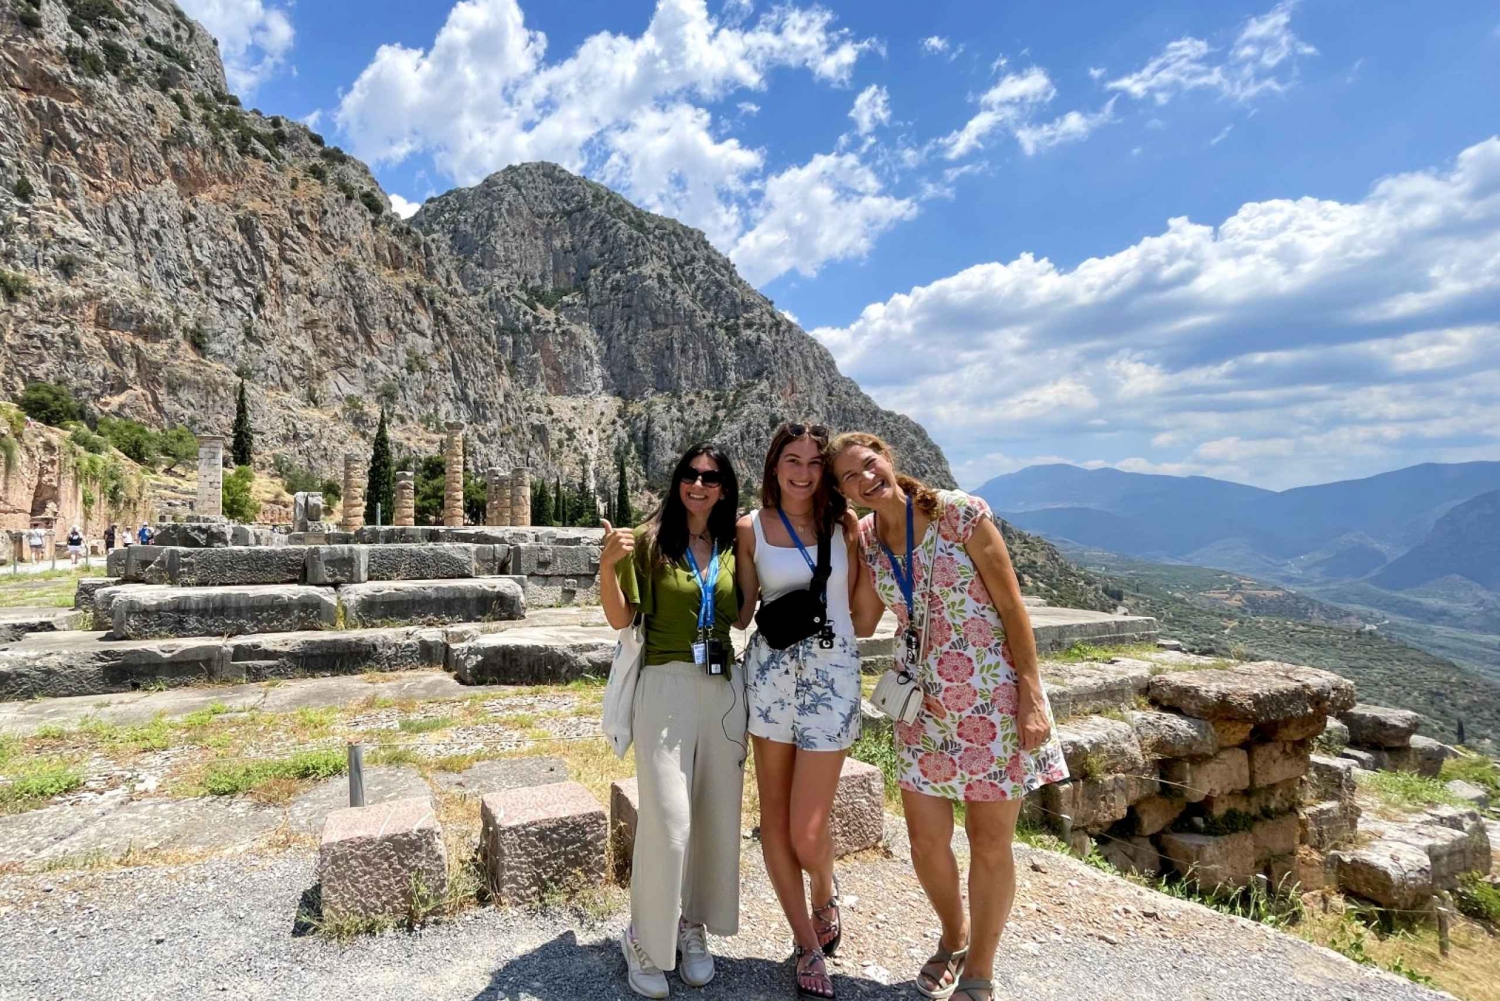 Von Athen aus: Archäologische Ausgrabungsstätte Delphi - Ganztägige geführte Tour